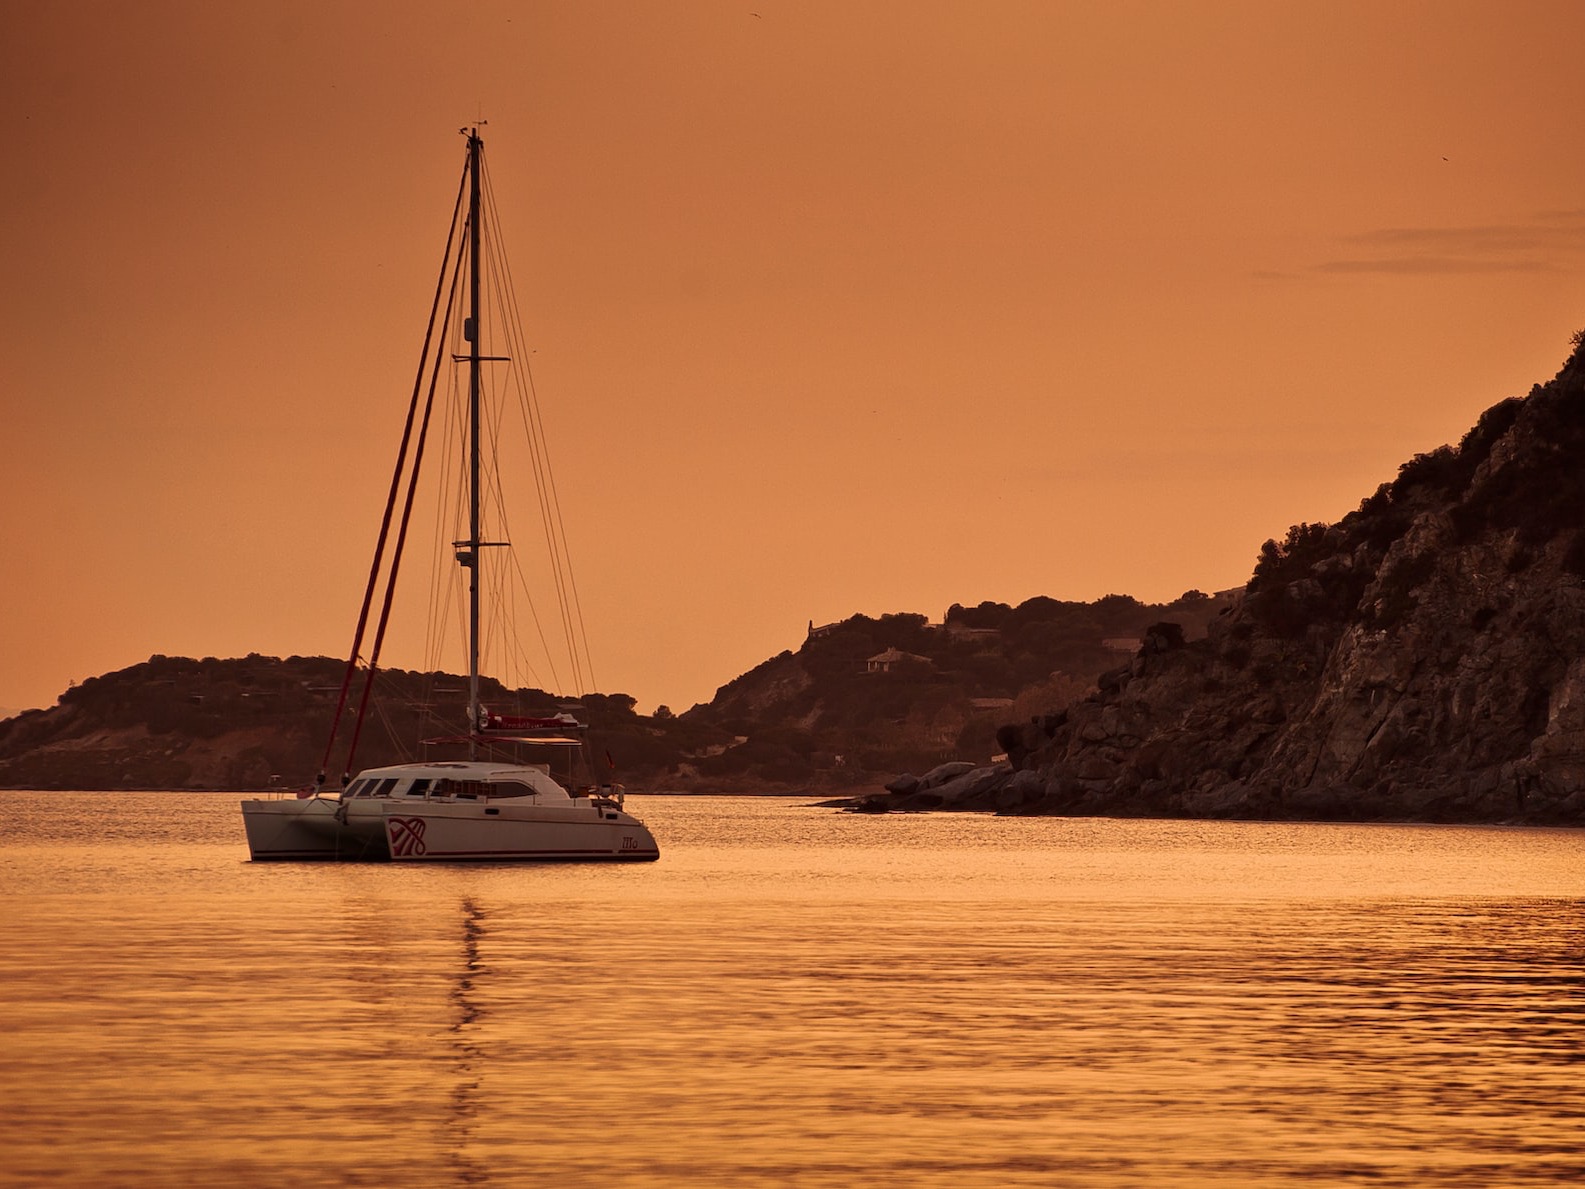 white catamaran sailing during sunset